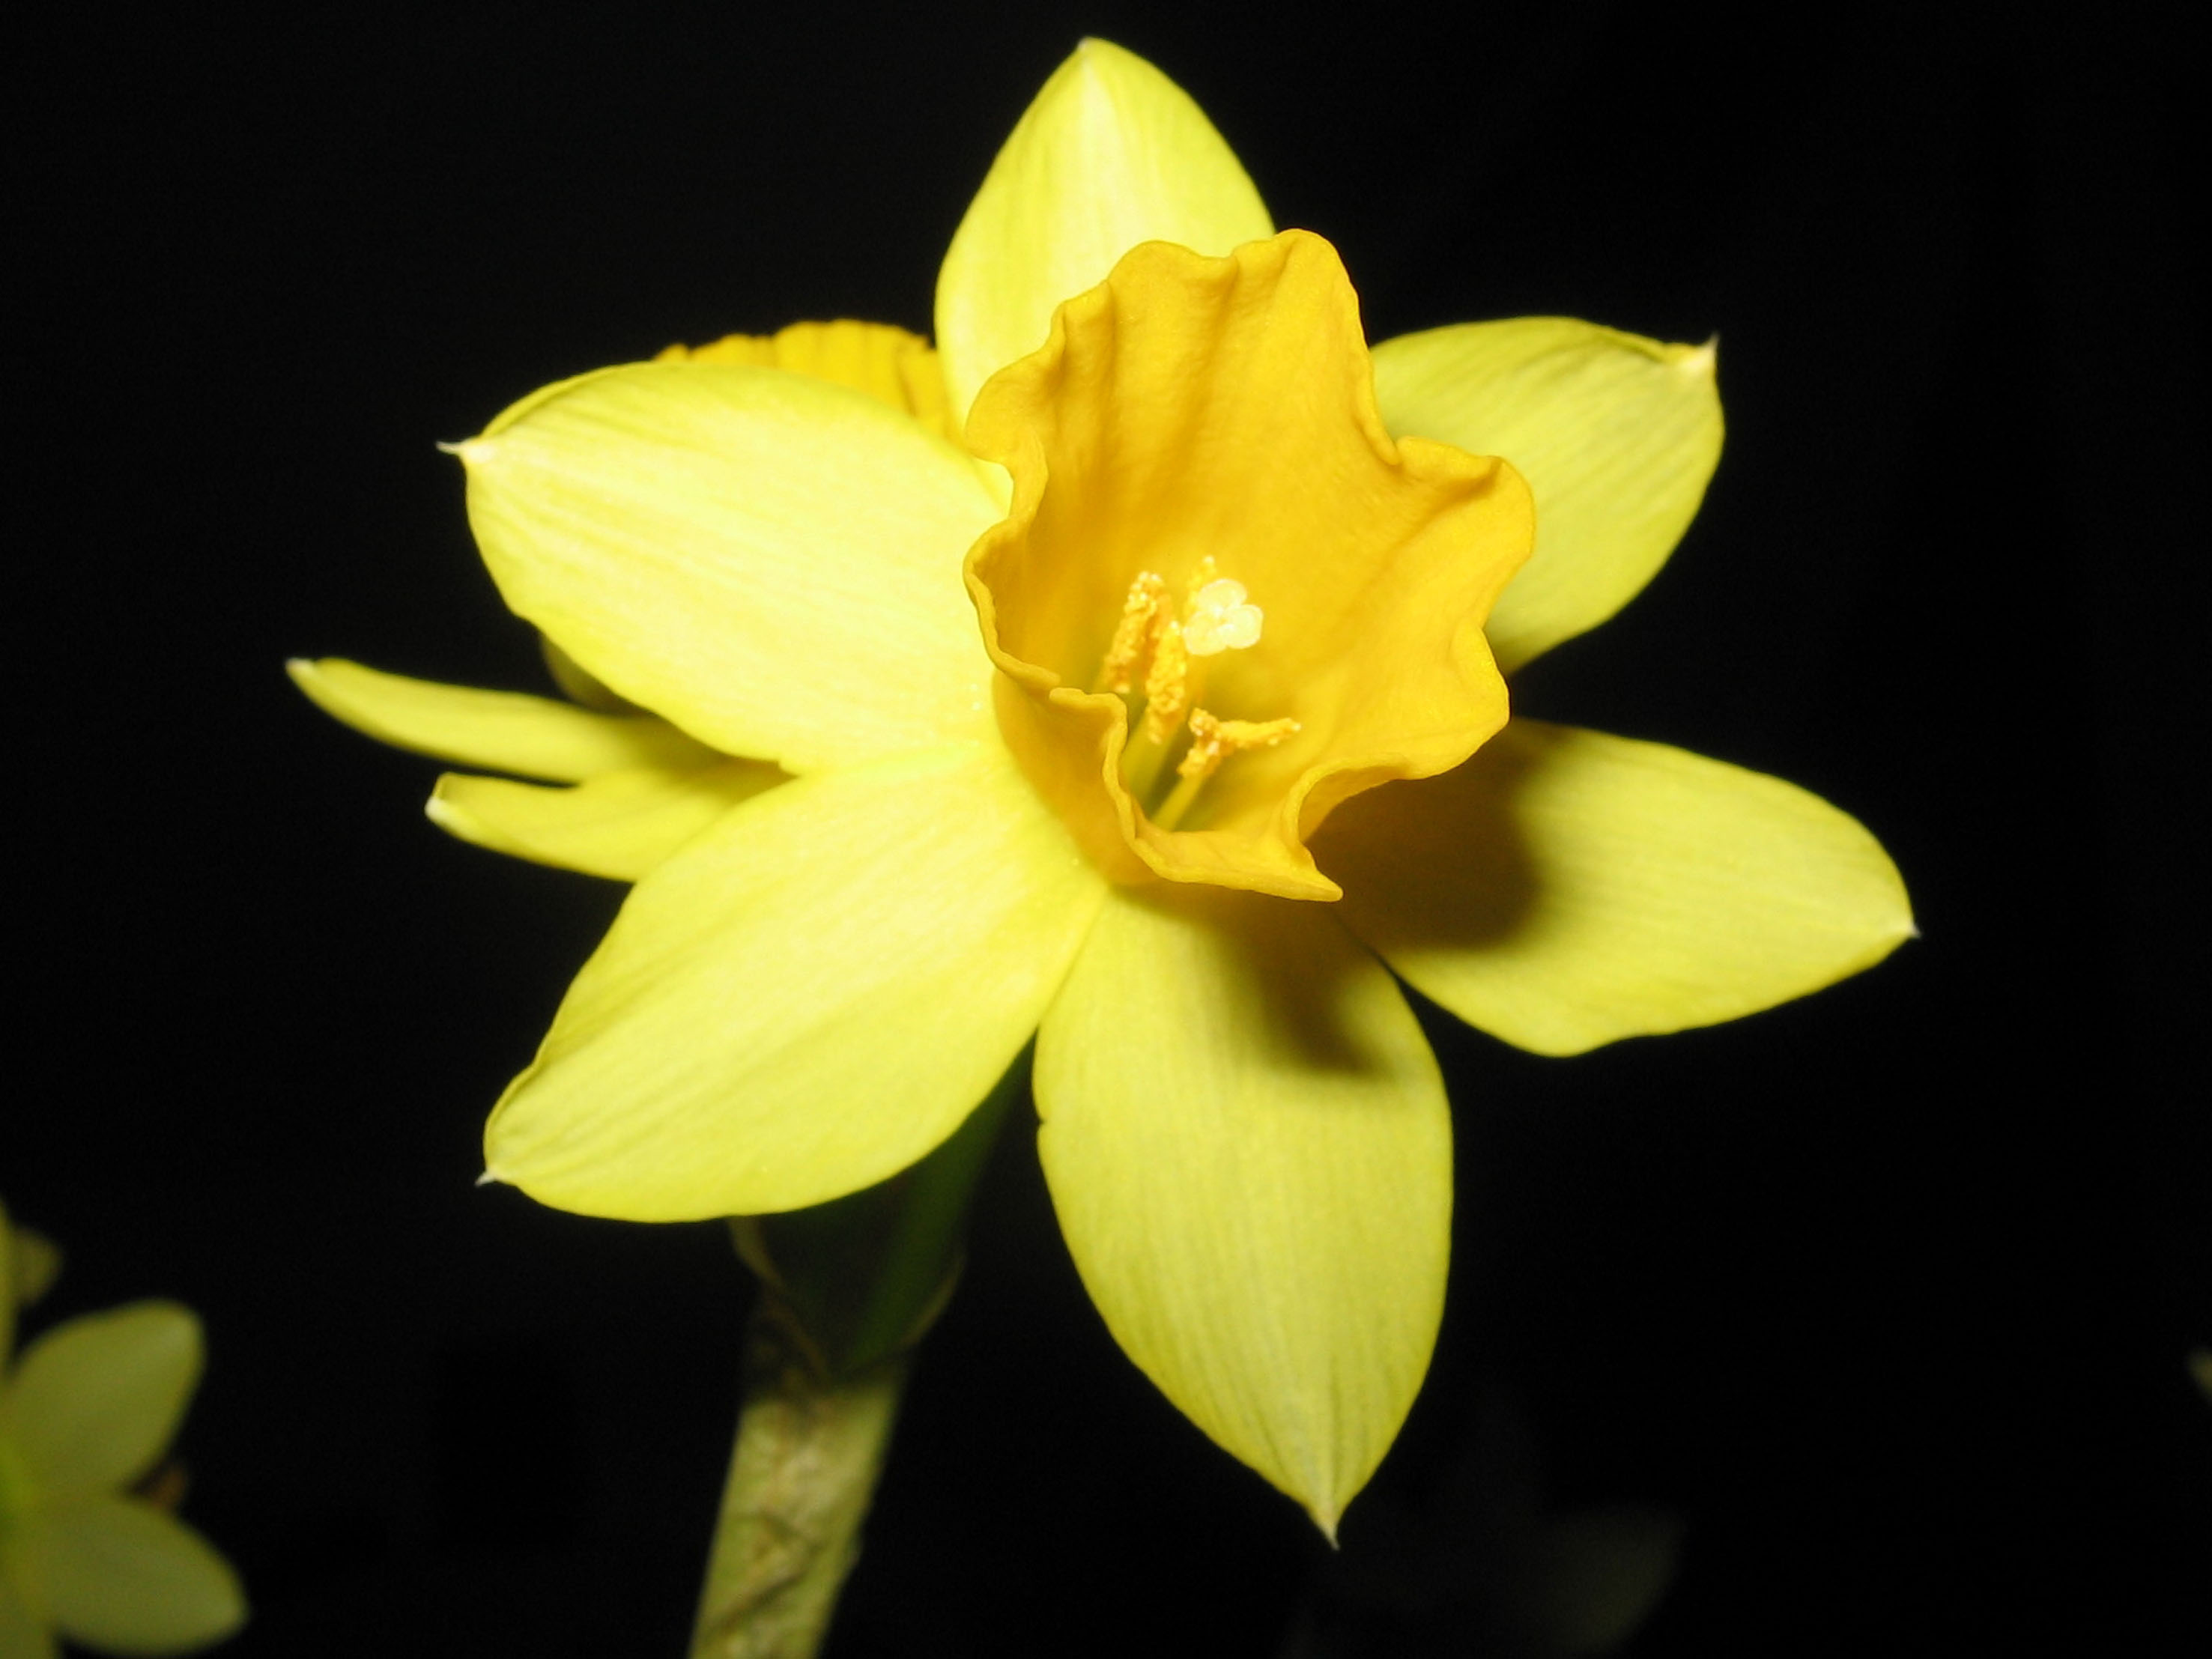 Бутон нарцисса. Жёлтые цветы похожие на нарциссы. Отцветевшие бутоны Нарцисс. Лепка Нарцисс.